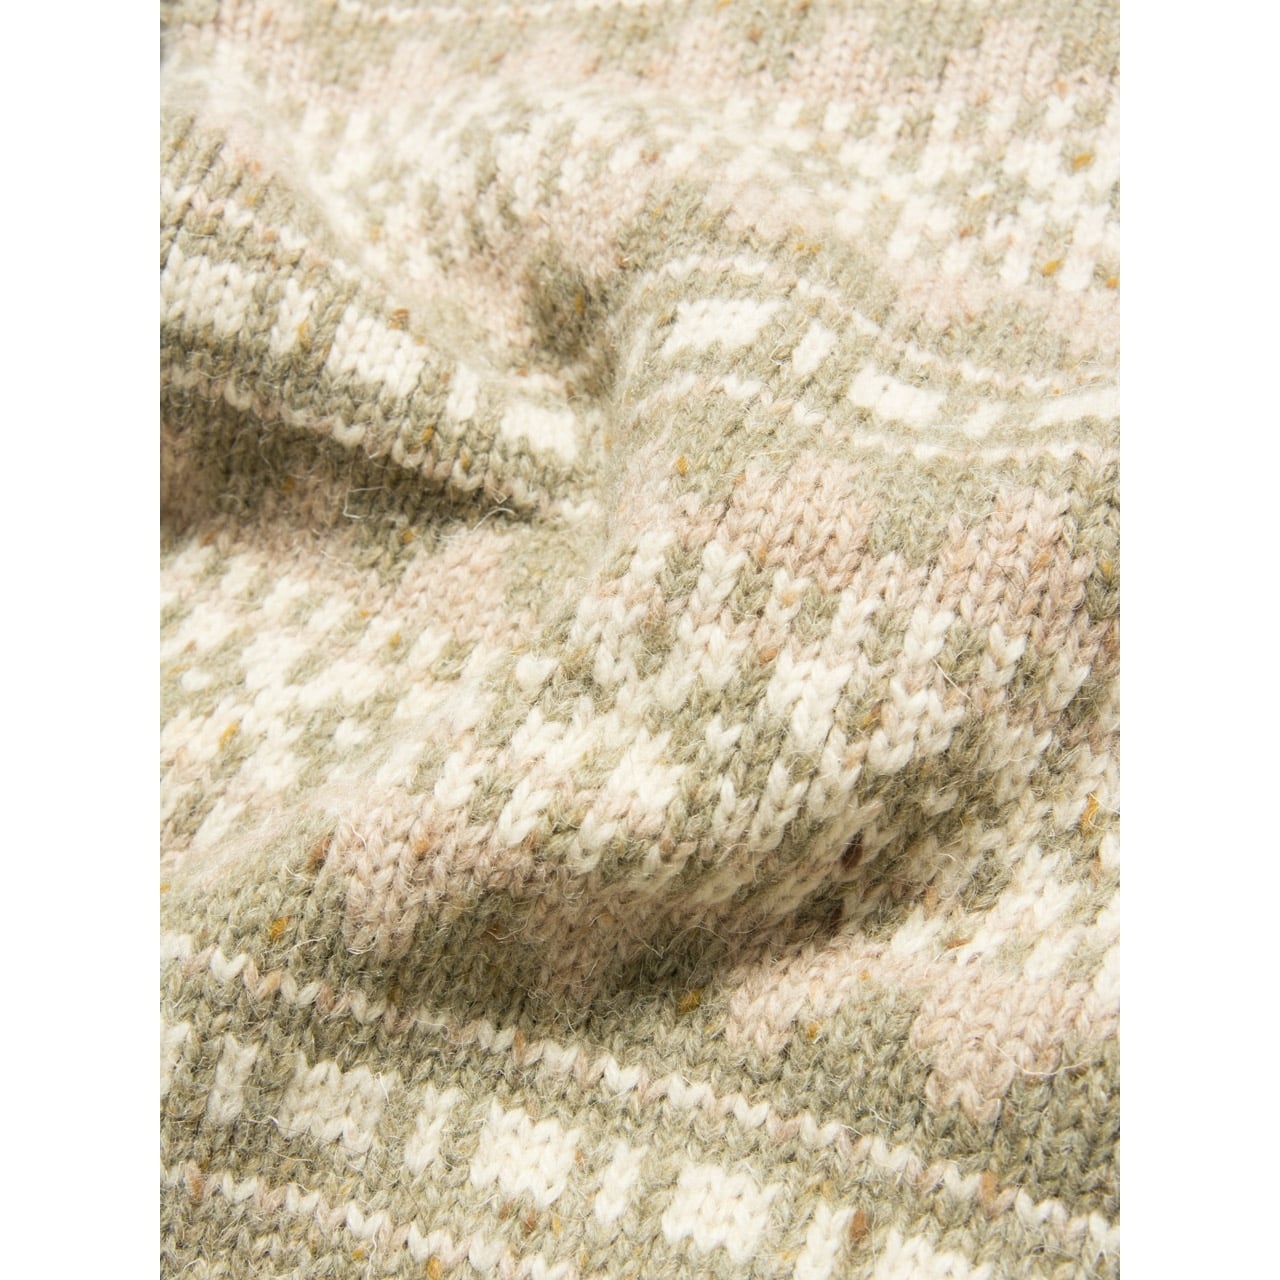 【V.JUUL Christensen】Made in Denmark knit（デンマーク製 プルオーバー ニット）11d